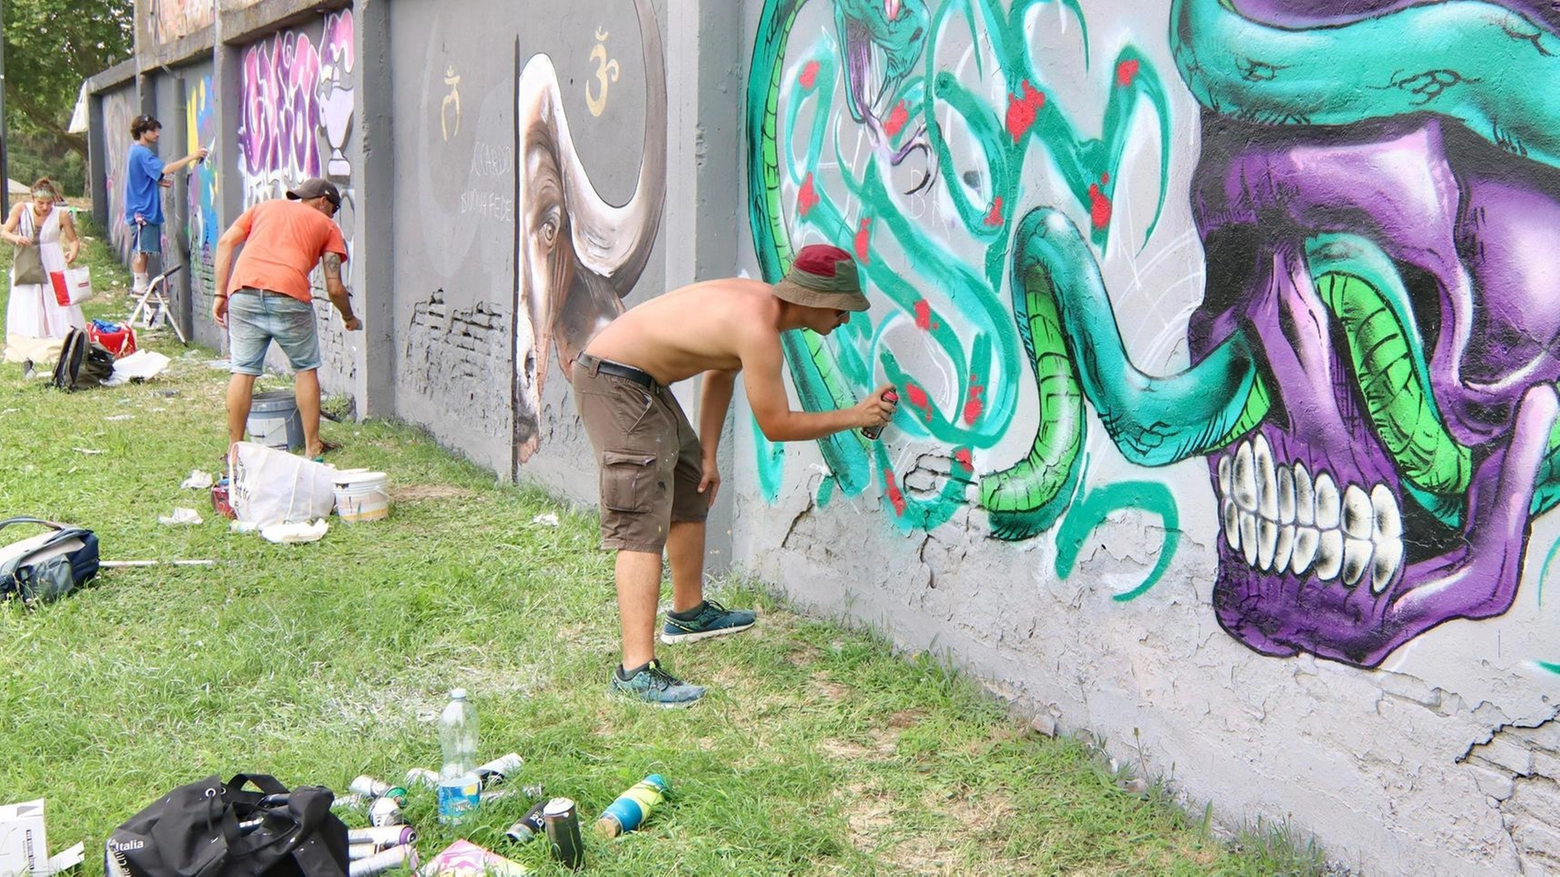 Darsena, due giorni tra i murales: "Graffiti in risposta al vandalismo"